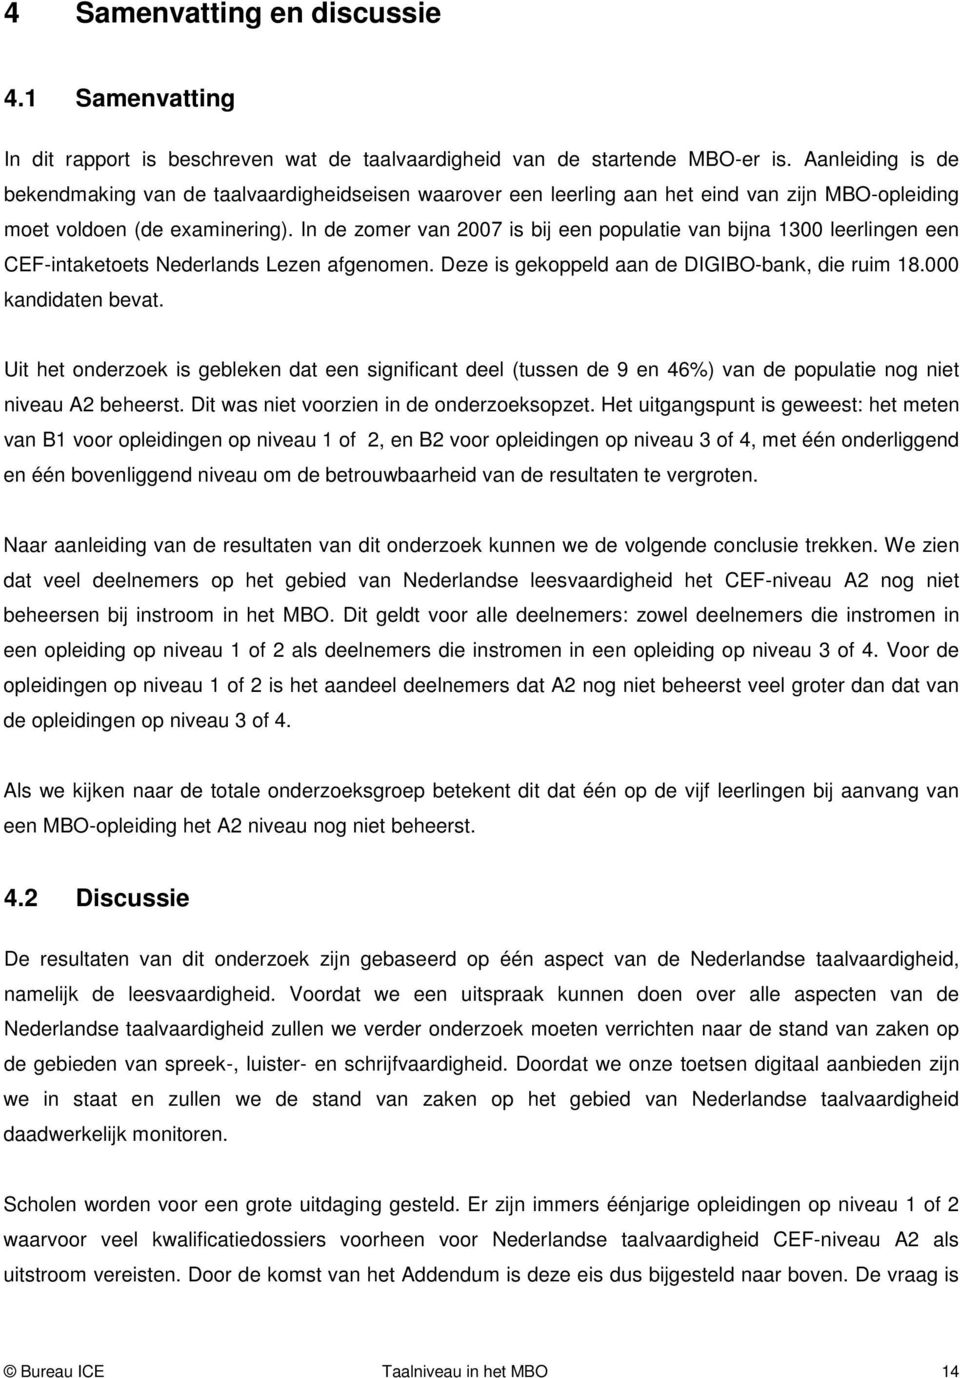 In de zomer van 2007 is bij een populatie van bijna 1300 leerlingen een CEF-intaketoets Nederlands Lezen afgenomen. Deze is gekoppeld aan de DIGIBO-bank, die ruim 18.000 kandidaten bevat.